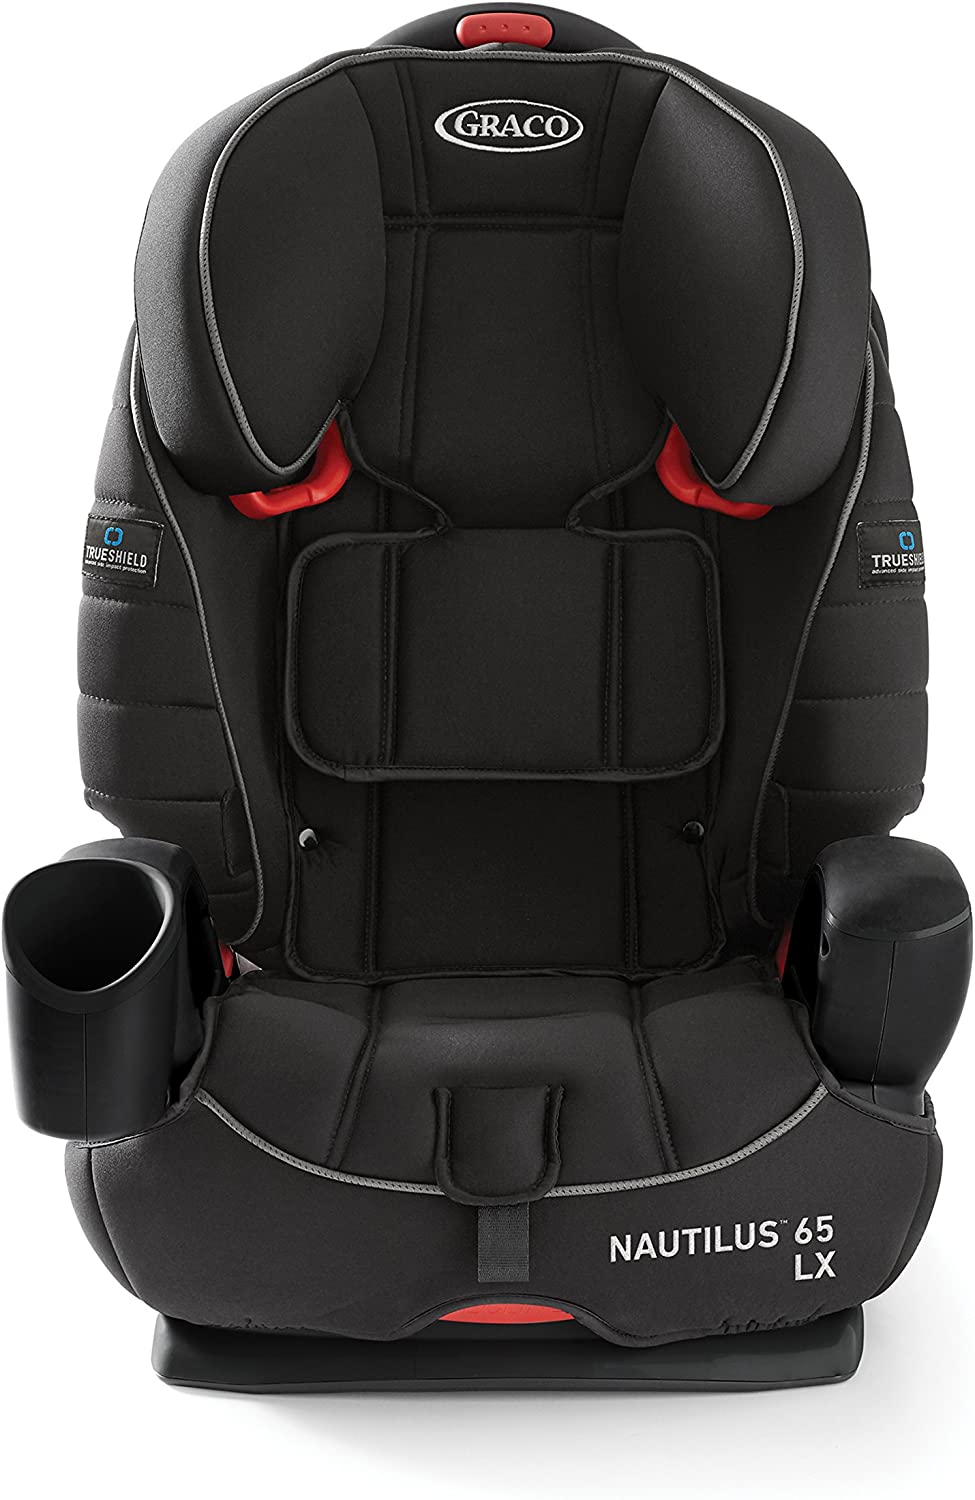 nautilus 65 lx car seat